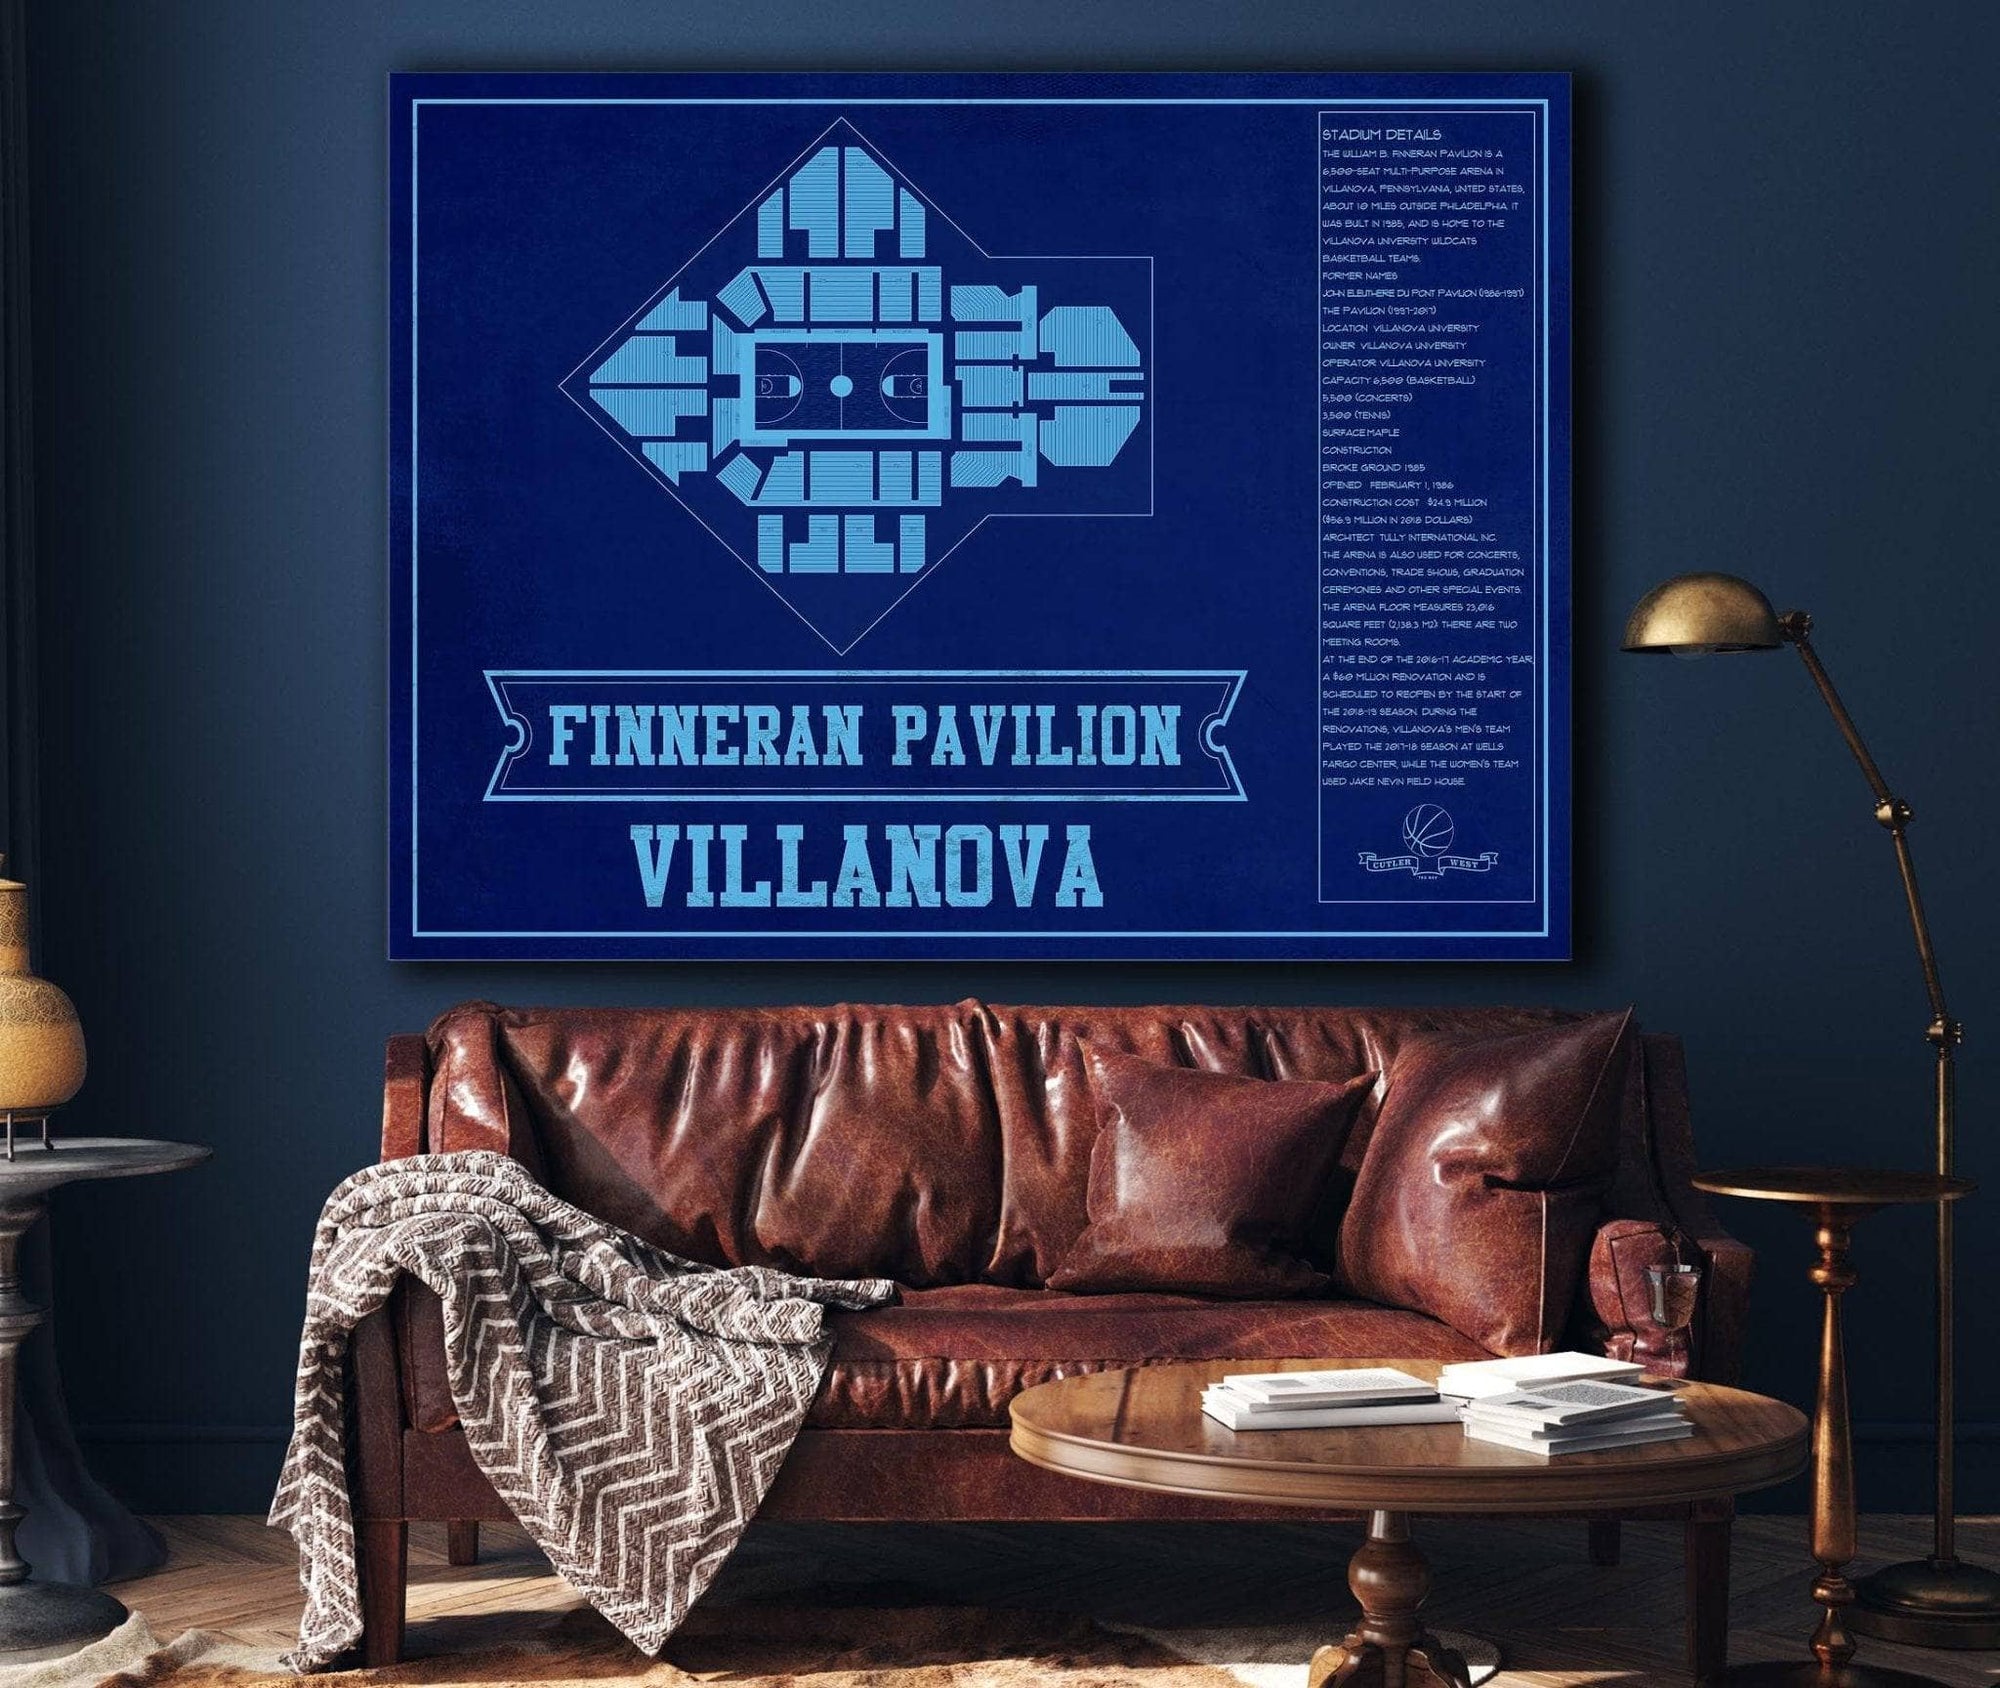 Cutler West Basketball Collection Villanova Wildcats - Finneran Pavilion Seating Chart - College Basketball Blueprint Team Color Art